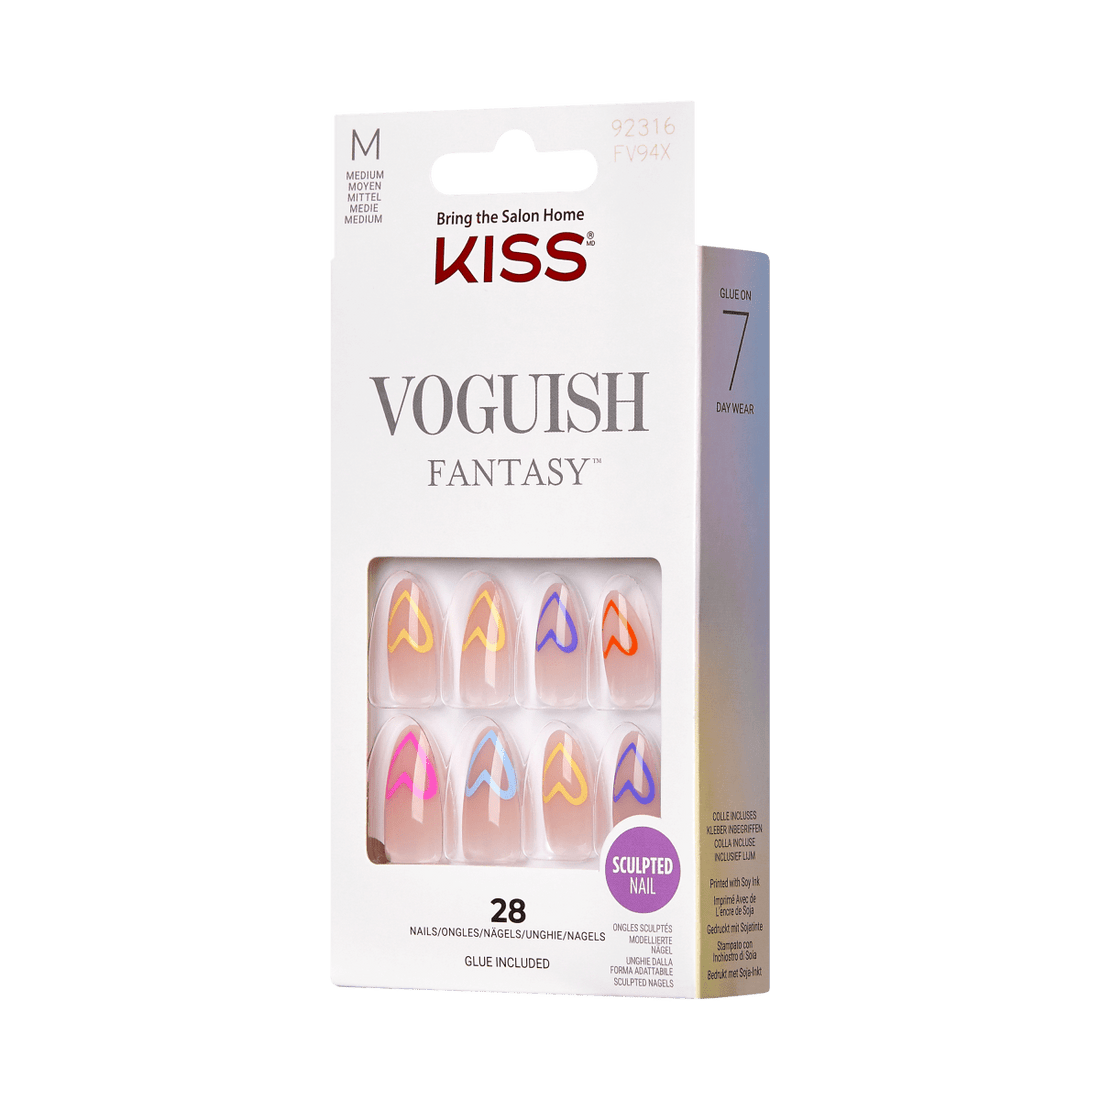 Voguish Fantasy Nails- brunch date